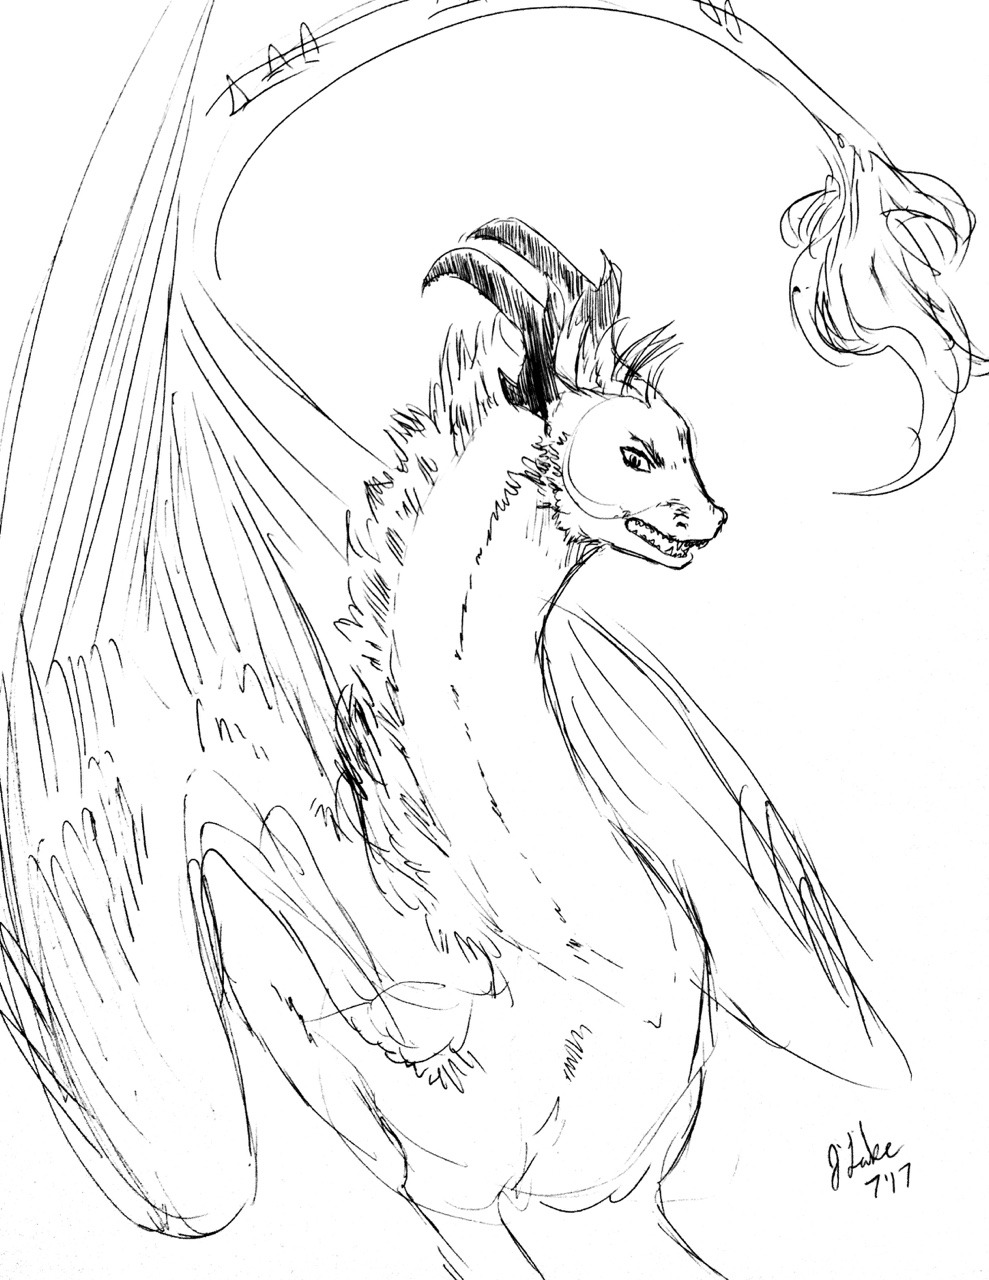 angry dragon sketch